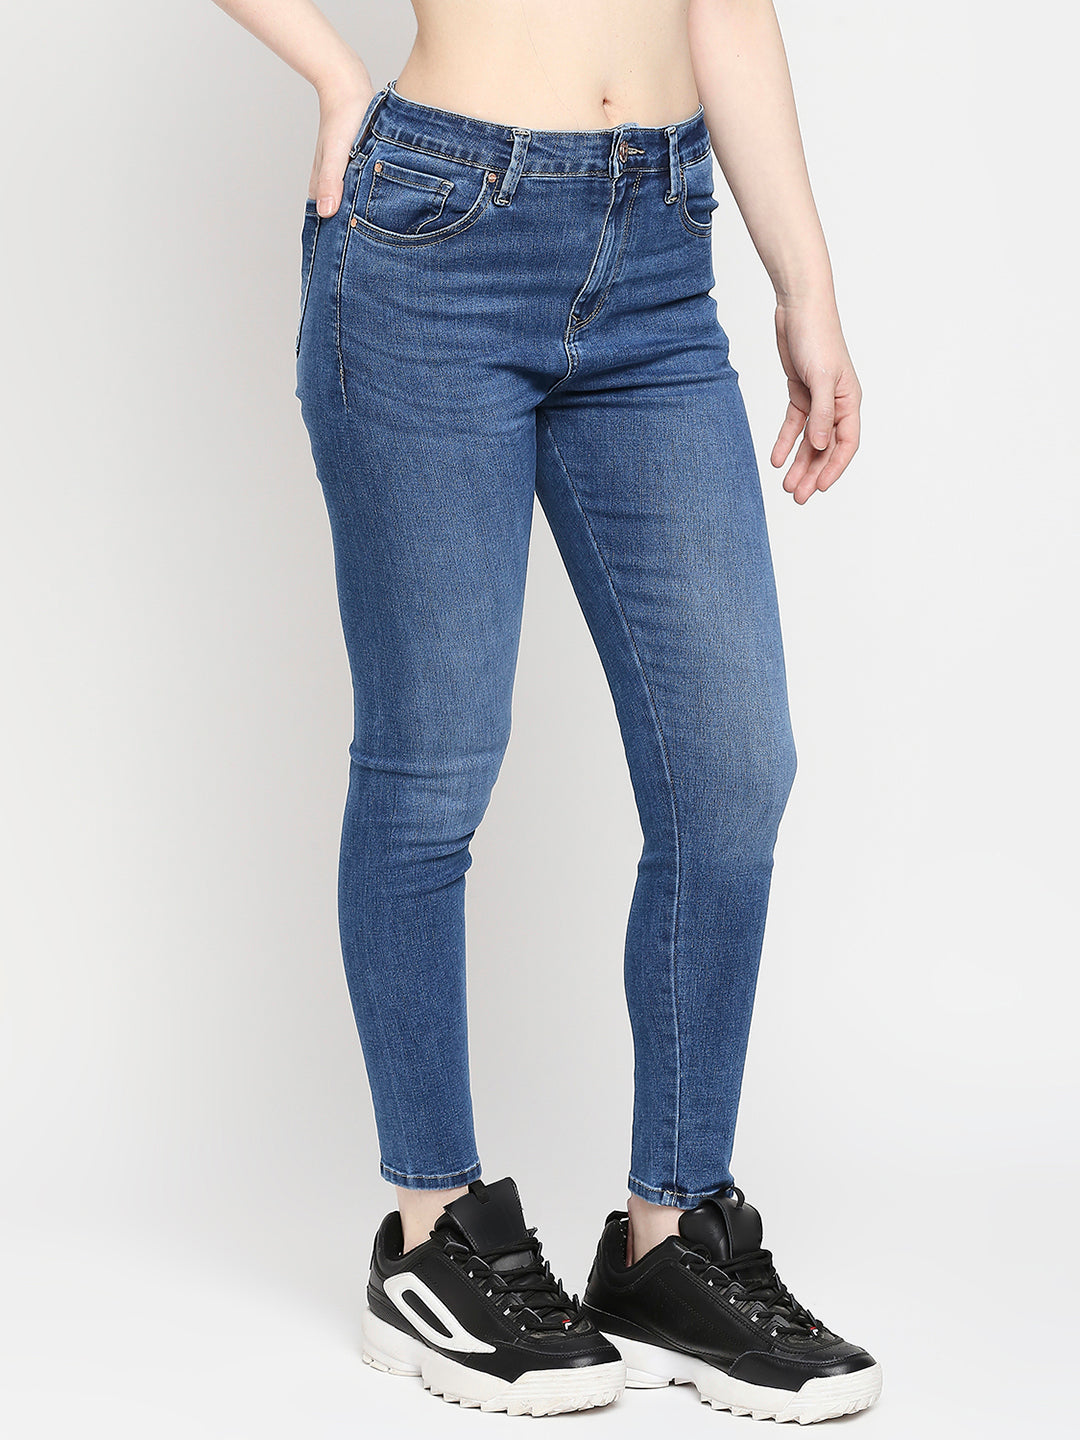 KOTTY Flared Women Light Blue Jeans - Buy KOTTY Flared Women Light Blue  Jeans Online at Best Prices in India | Flipkart.com